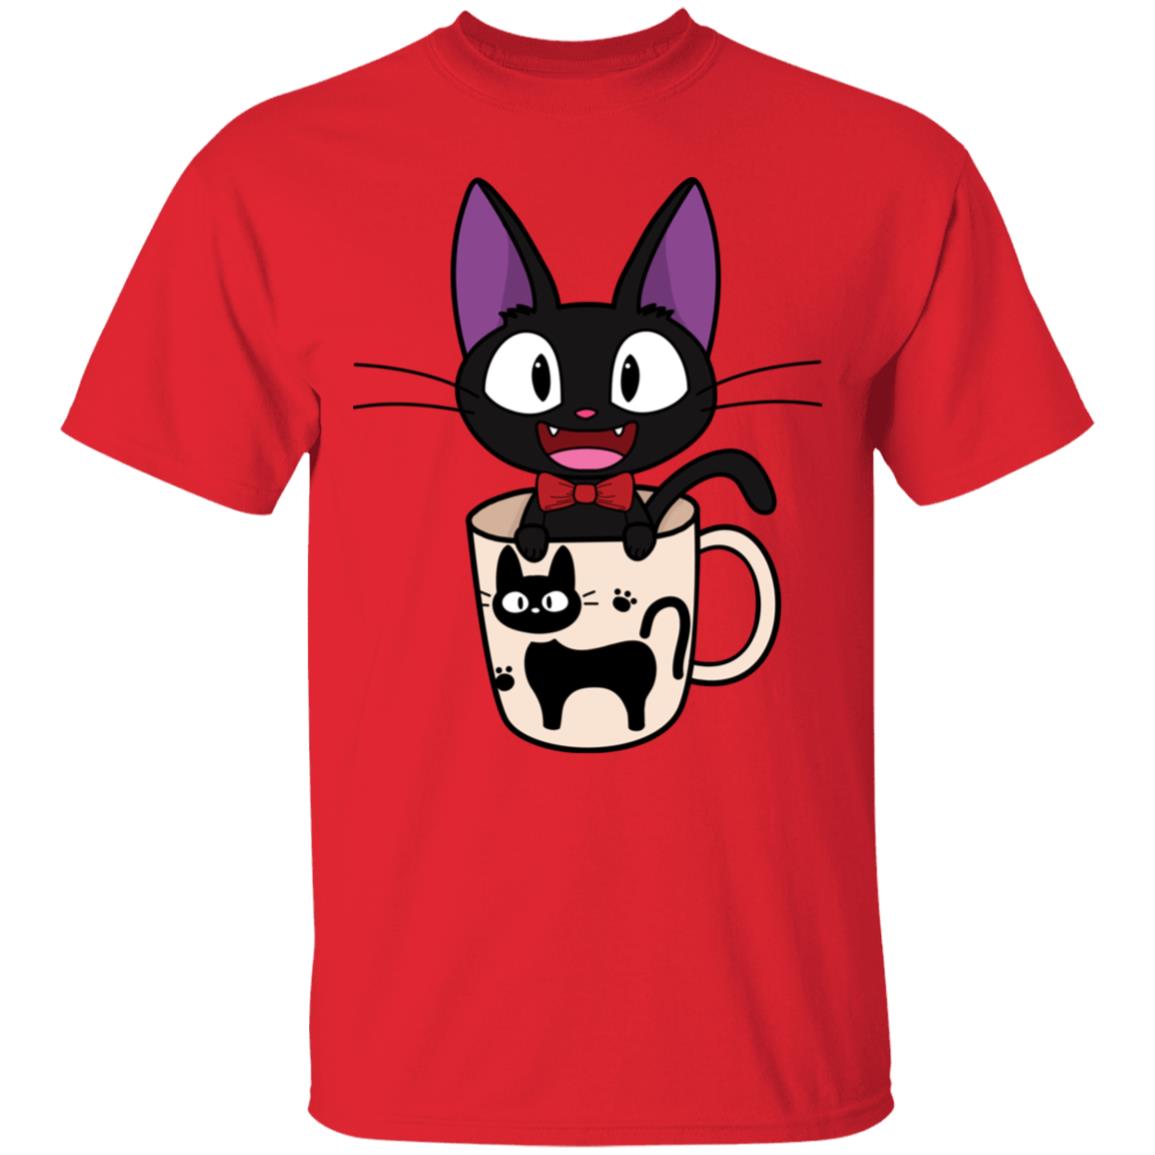 Jiji in the Cat Cup T Shirt